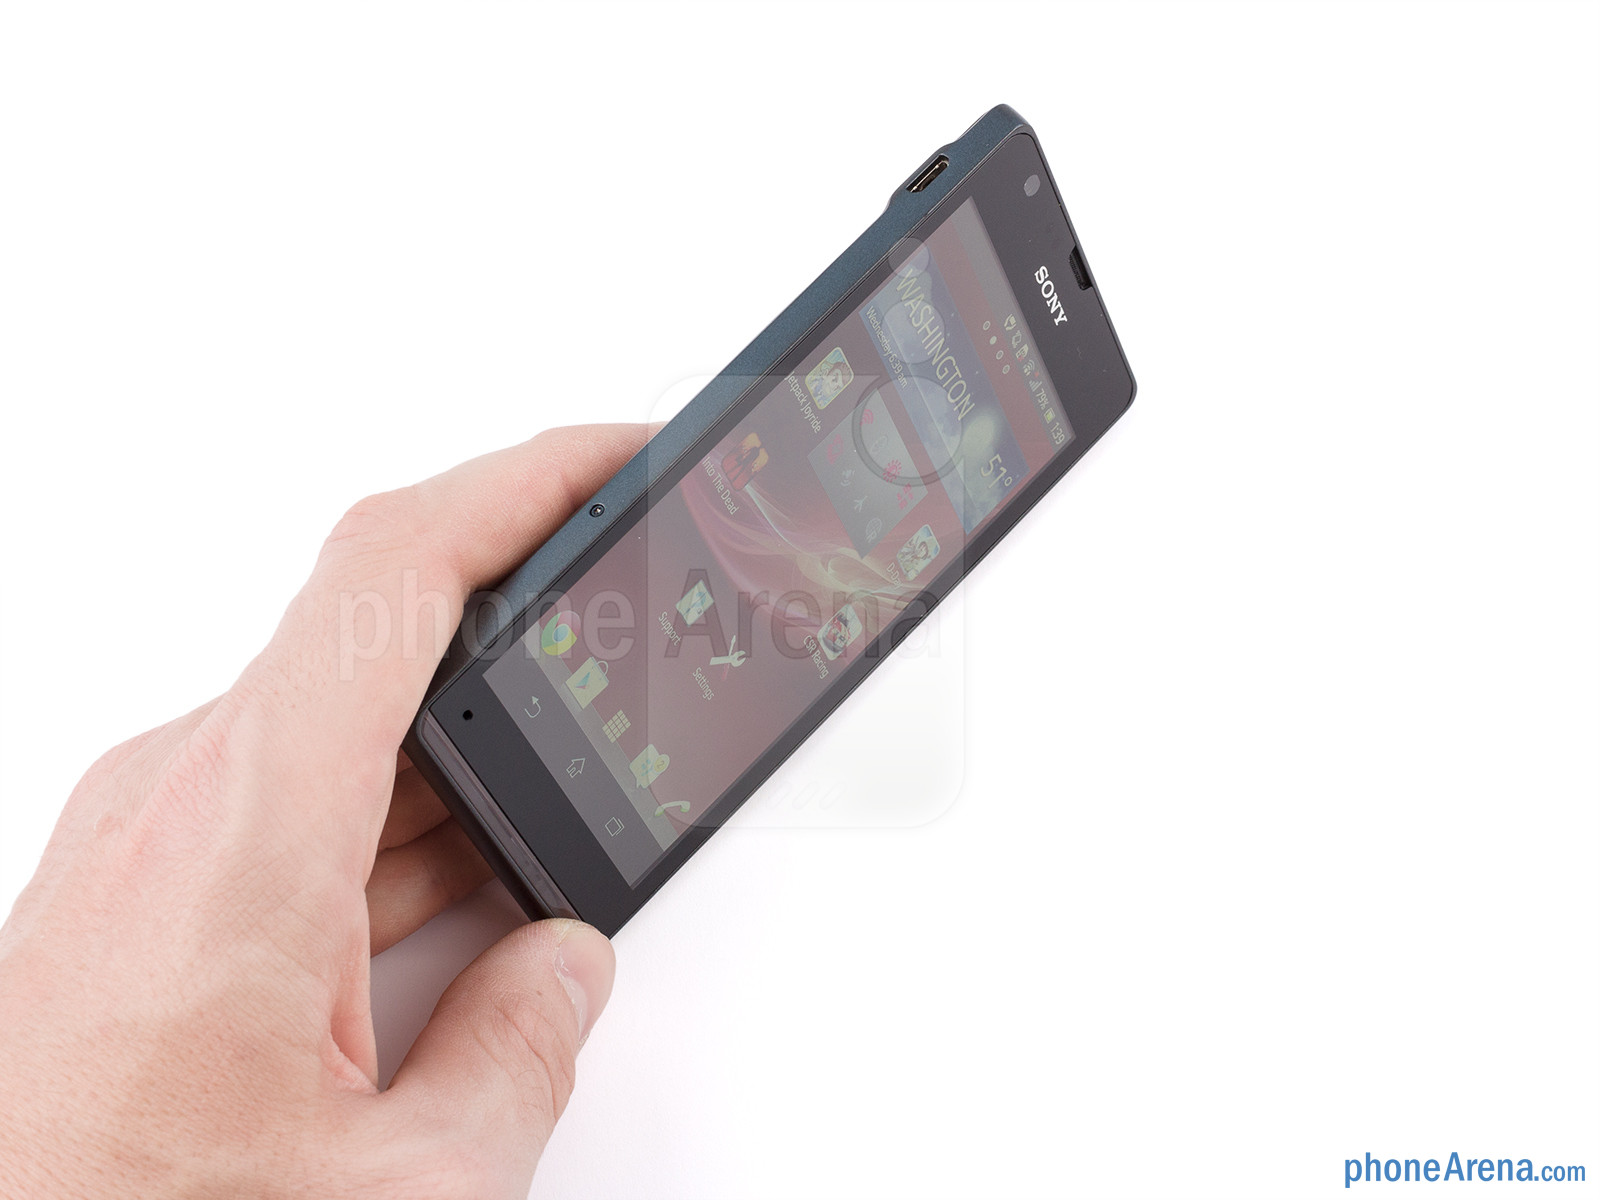 Sony Xperia SP: Cấu hình "ngon", thiết kế chắc chắn nhưng camera chưa tốt 13